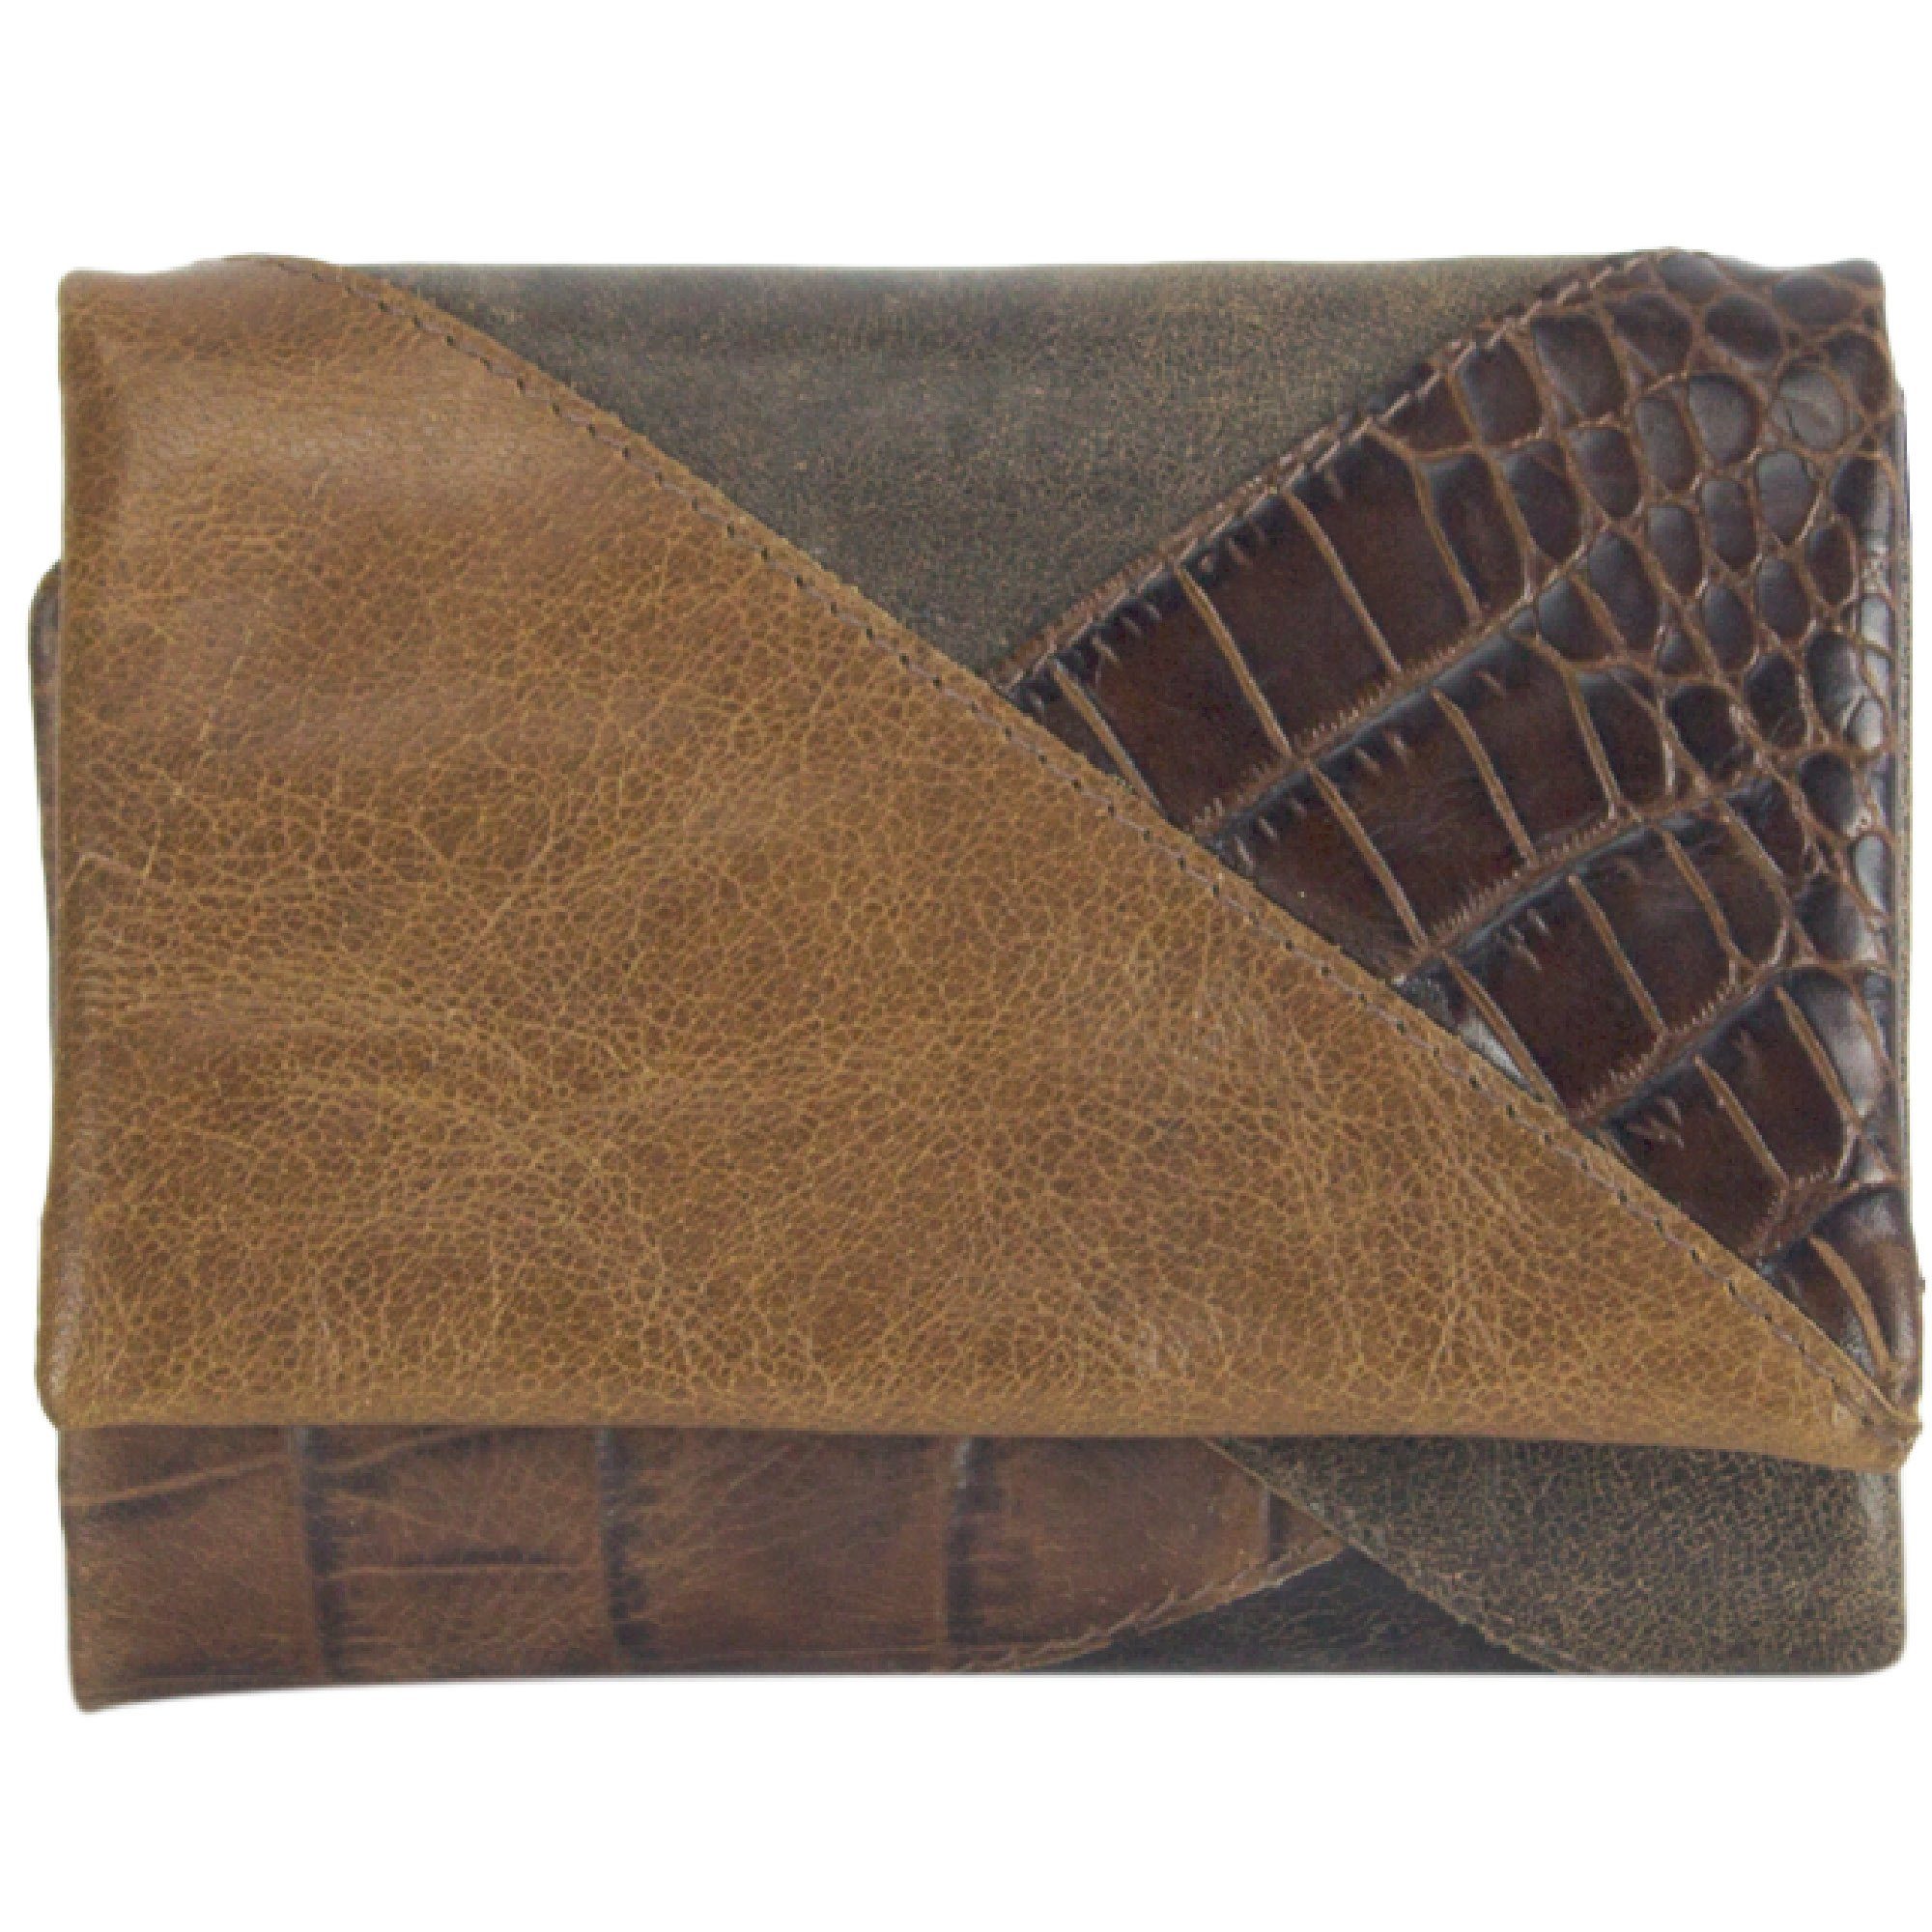 Sunsa Geldbörse Leder Geldbeutel Portemonnaie Brieftasche, echt Leder, mit RFID-Schutz, in eleganten Design, zeitlos dunkelbraun